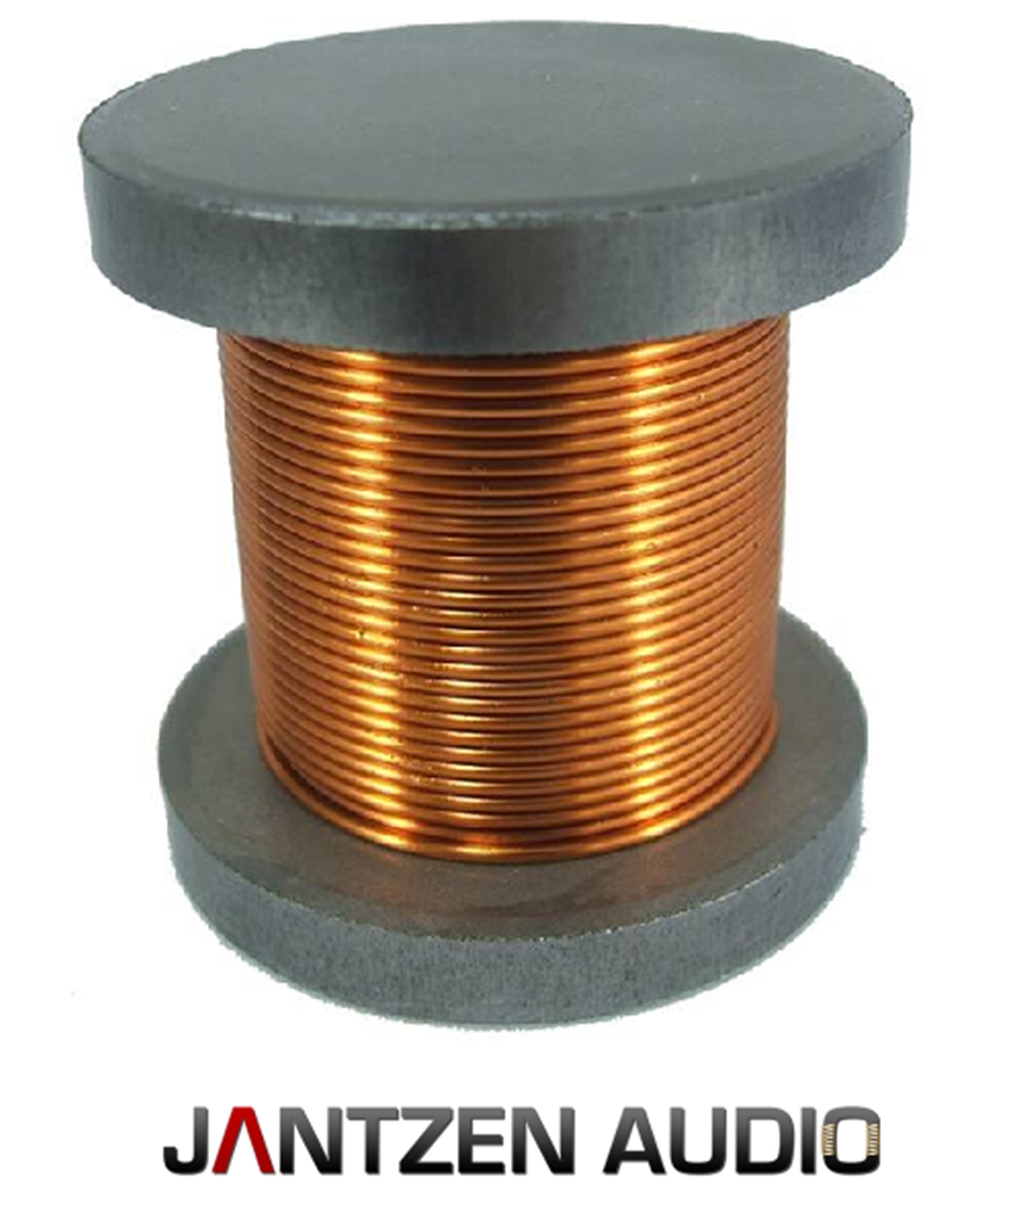 Катушка индуктивности 60 ом. Катушка индуктивности Jantzen Iron Core Coil + Discs. Катушка индуктивности bn3m 20003a. Jantzen-Audio восковая катушка индуктор.